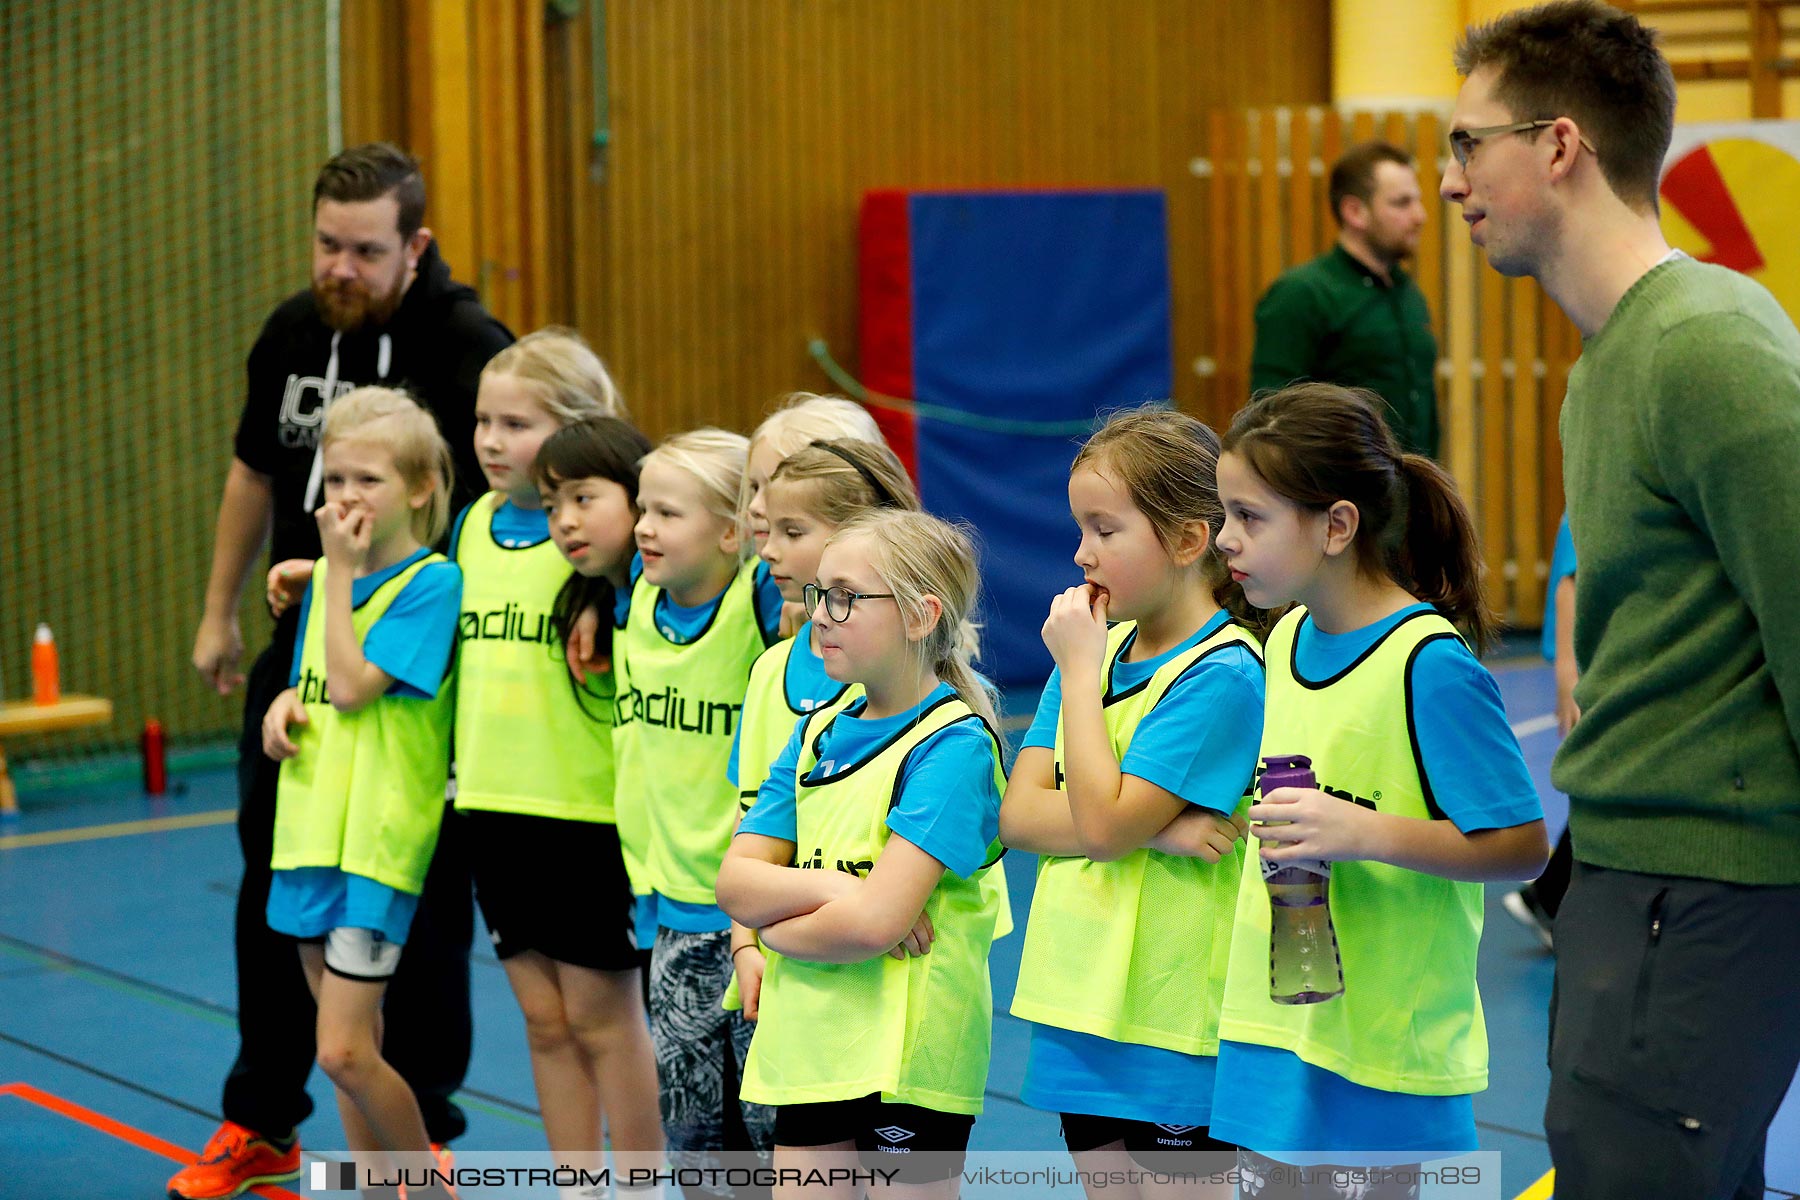 Klasshandboll Skövde 2019 Åldersklass 2010,mix,Arena Skövde,Skövde,Sverige,Handboll,,2019,211939